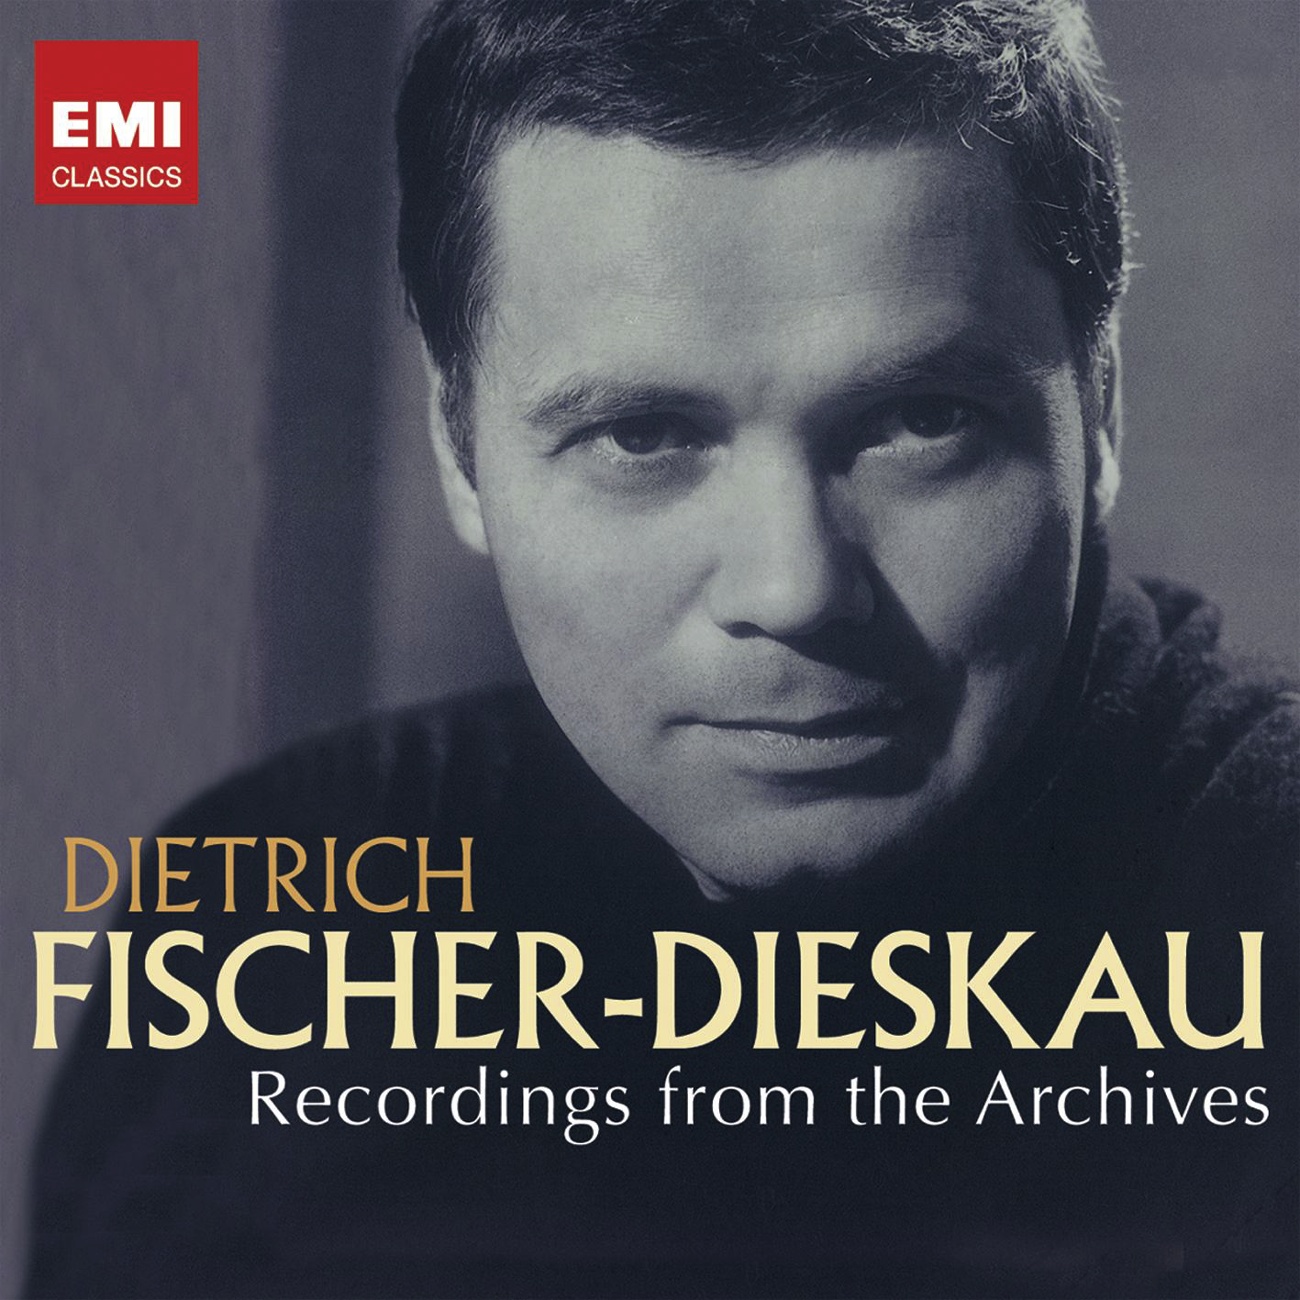 Dietrich Fischer-Dieskau: Recordings from the Archives